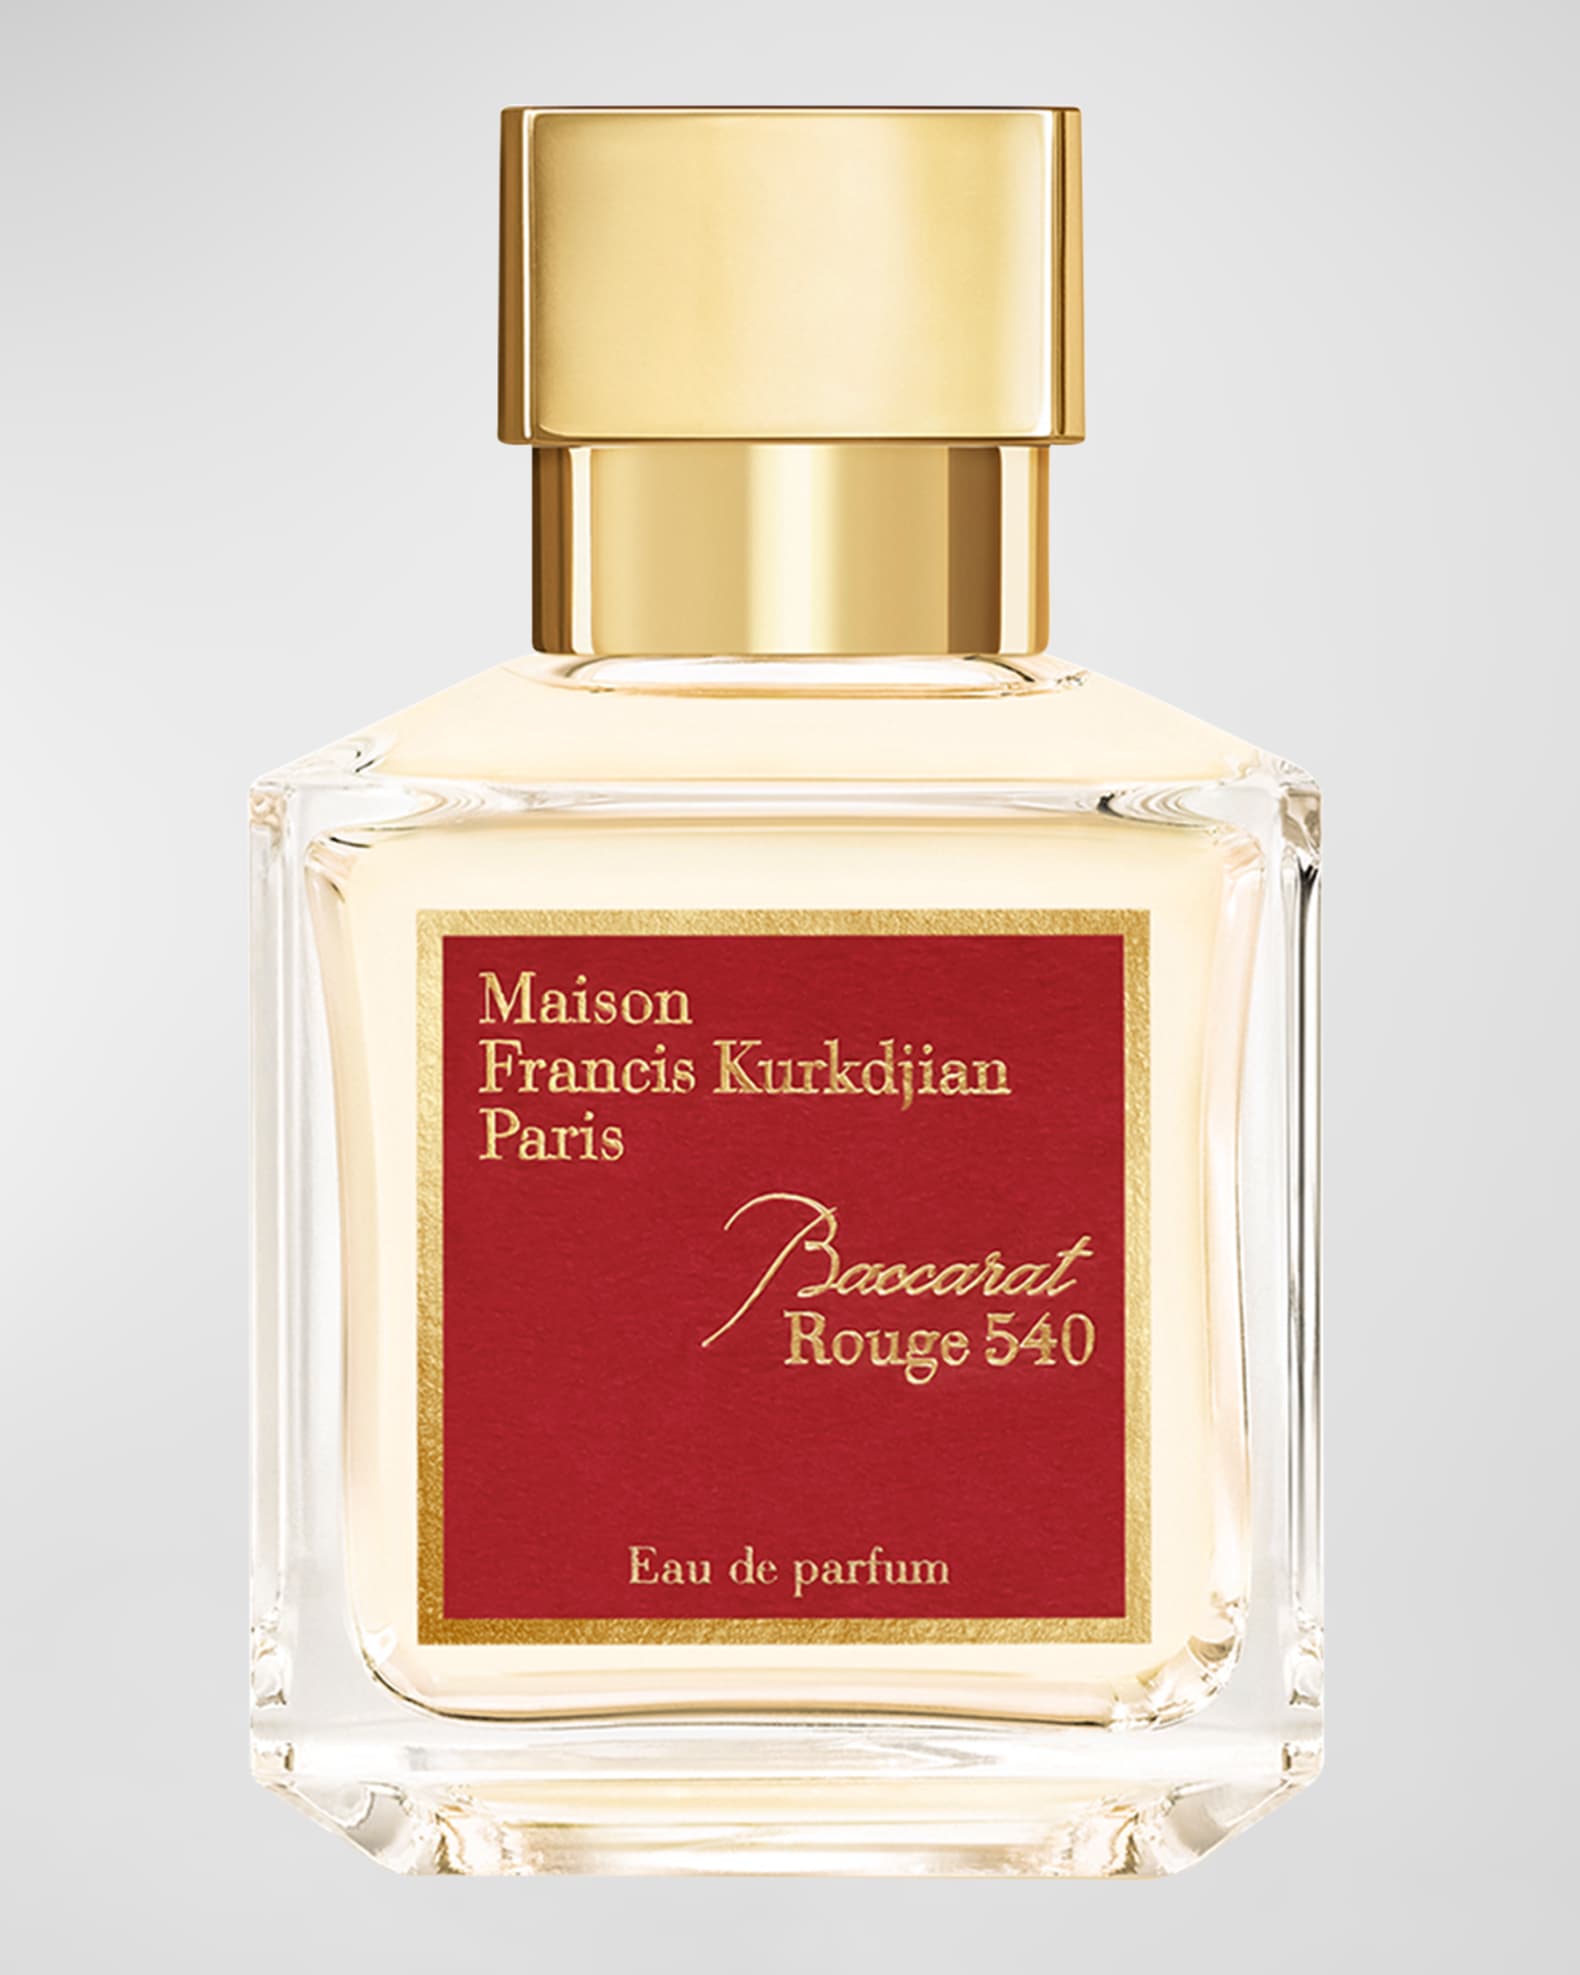 Baccarat Rouge 540 Eau de Parfum, 2.4 oz. | Neiman Marcus